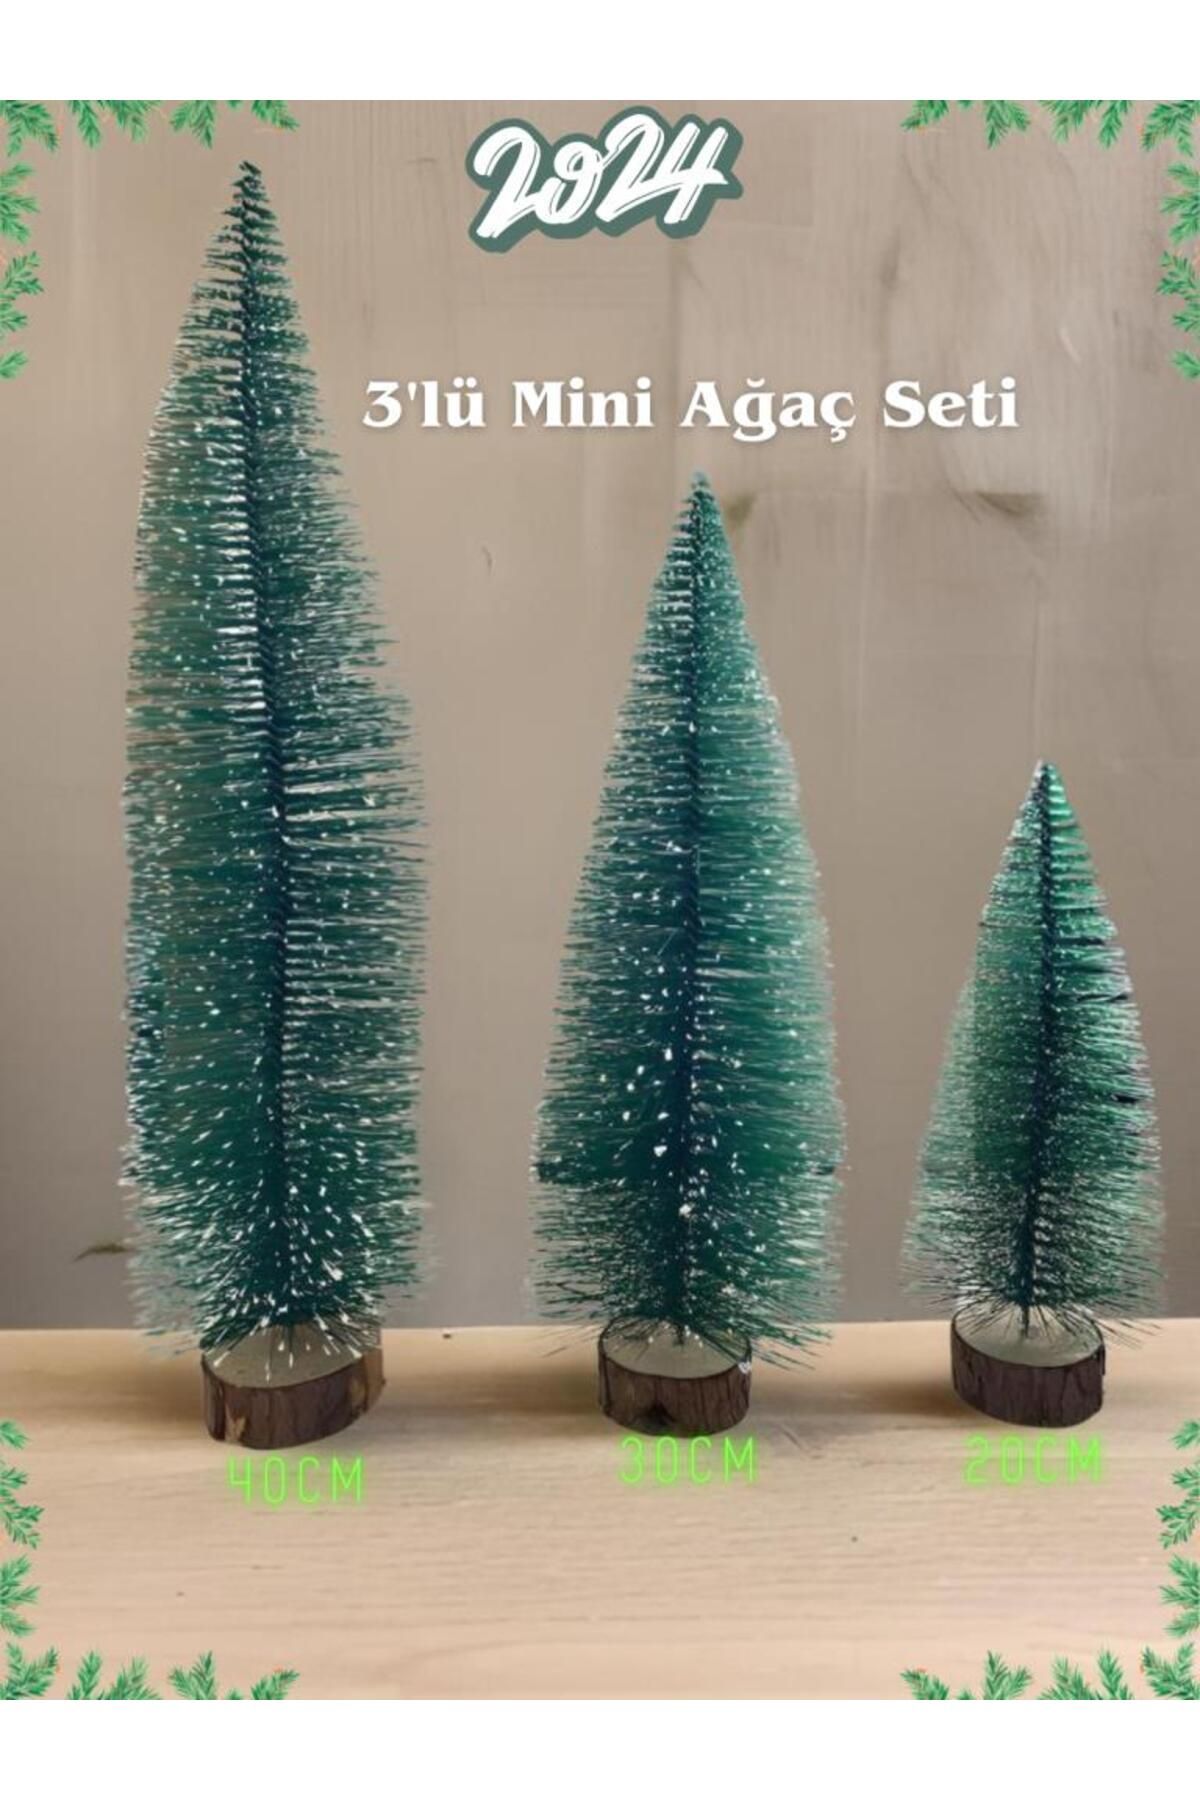 buradanaldım 3'lü Yılbaşı Mini Masa Ağacı Seti, 40cm 30cm 20cm Kütük Yapay Noel Dekoratif Çam Ağacı, 3 Adet Ağaç